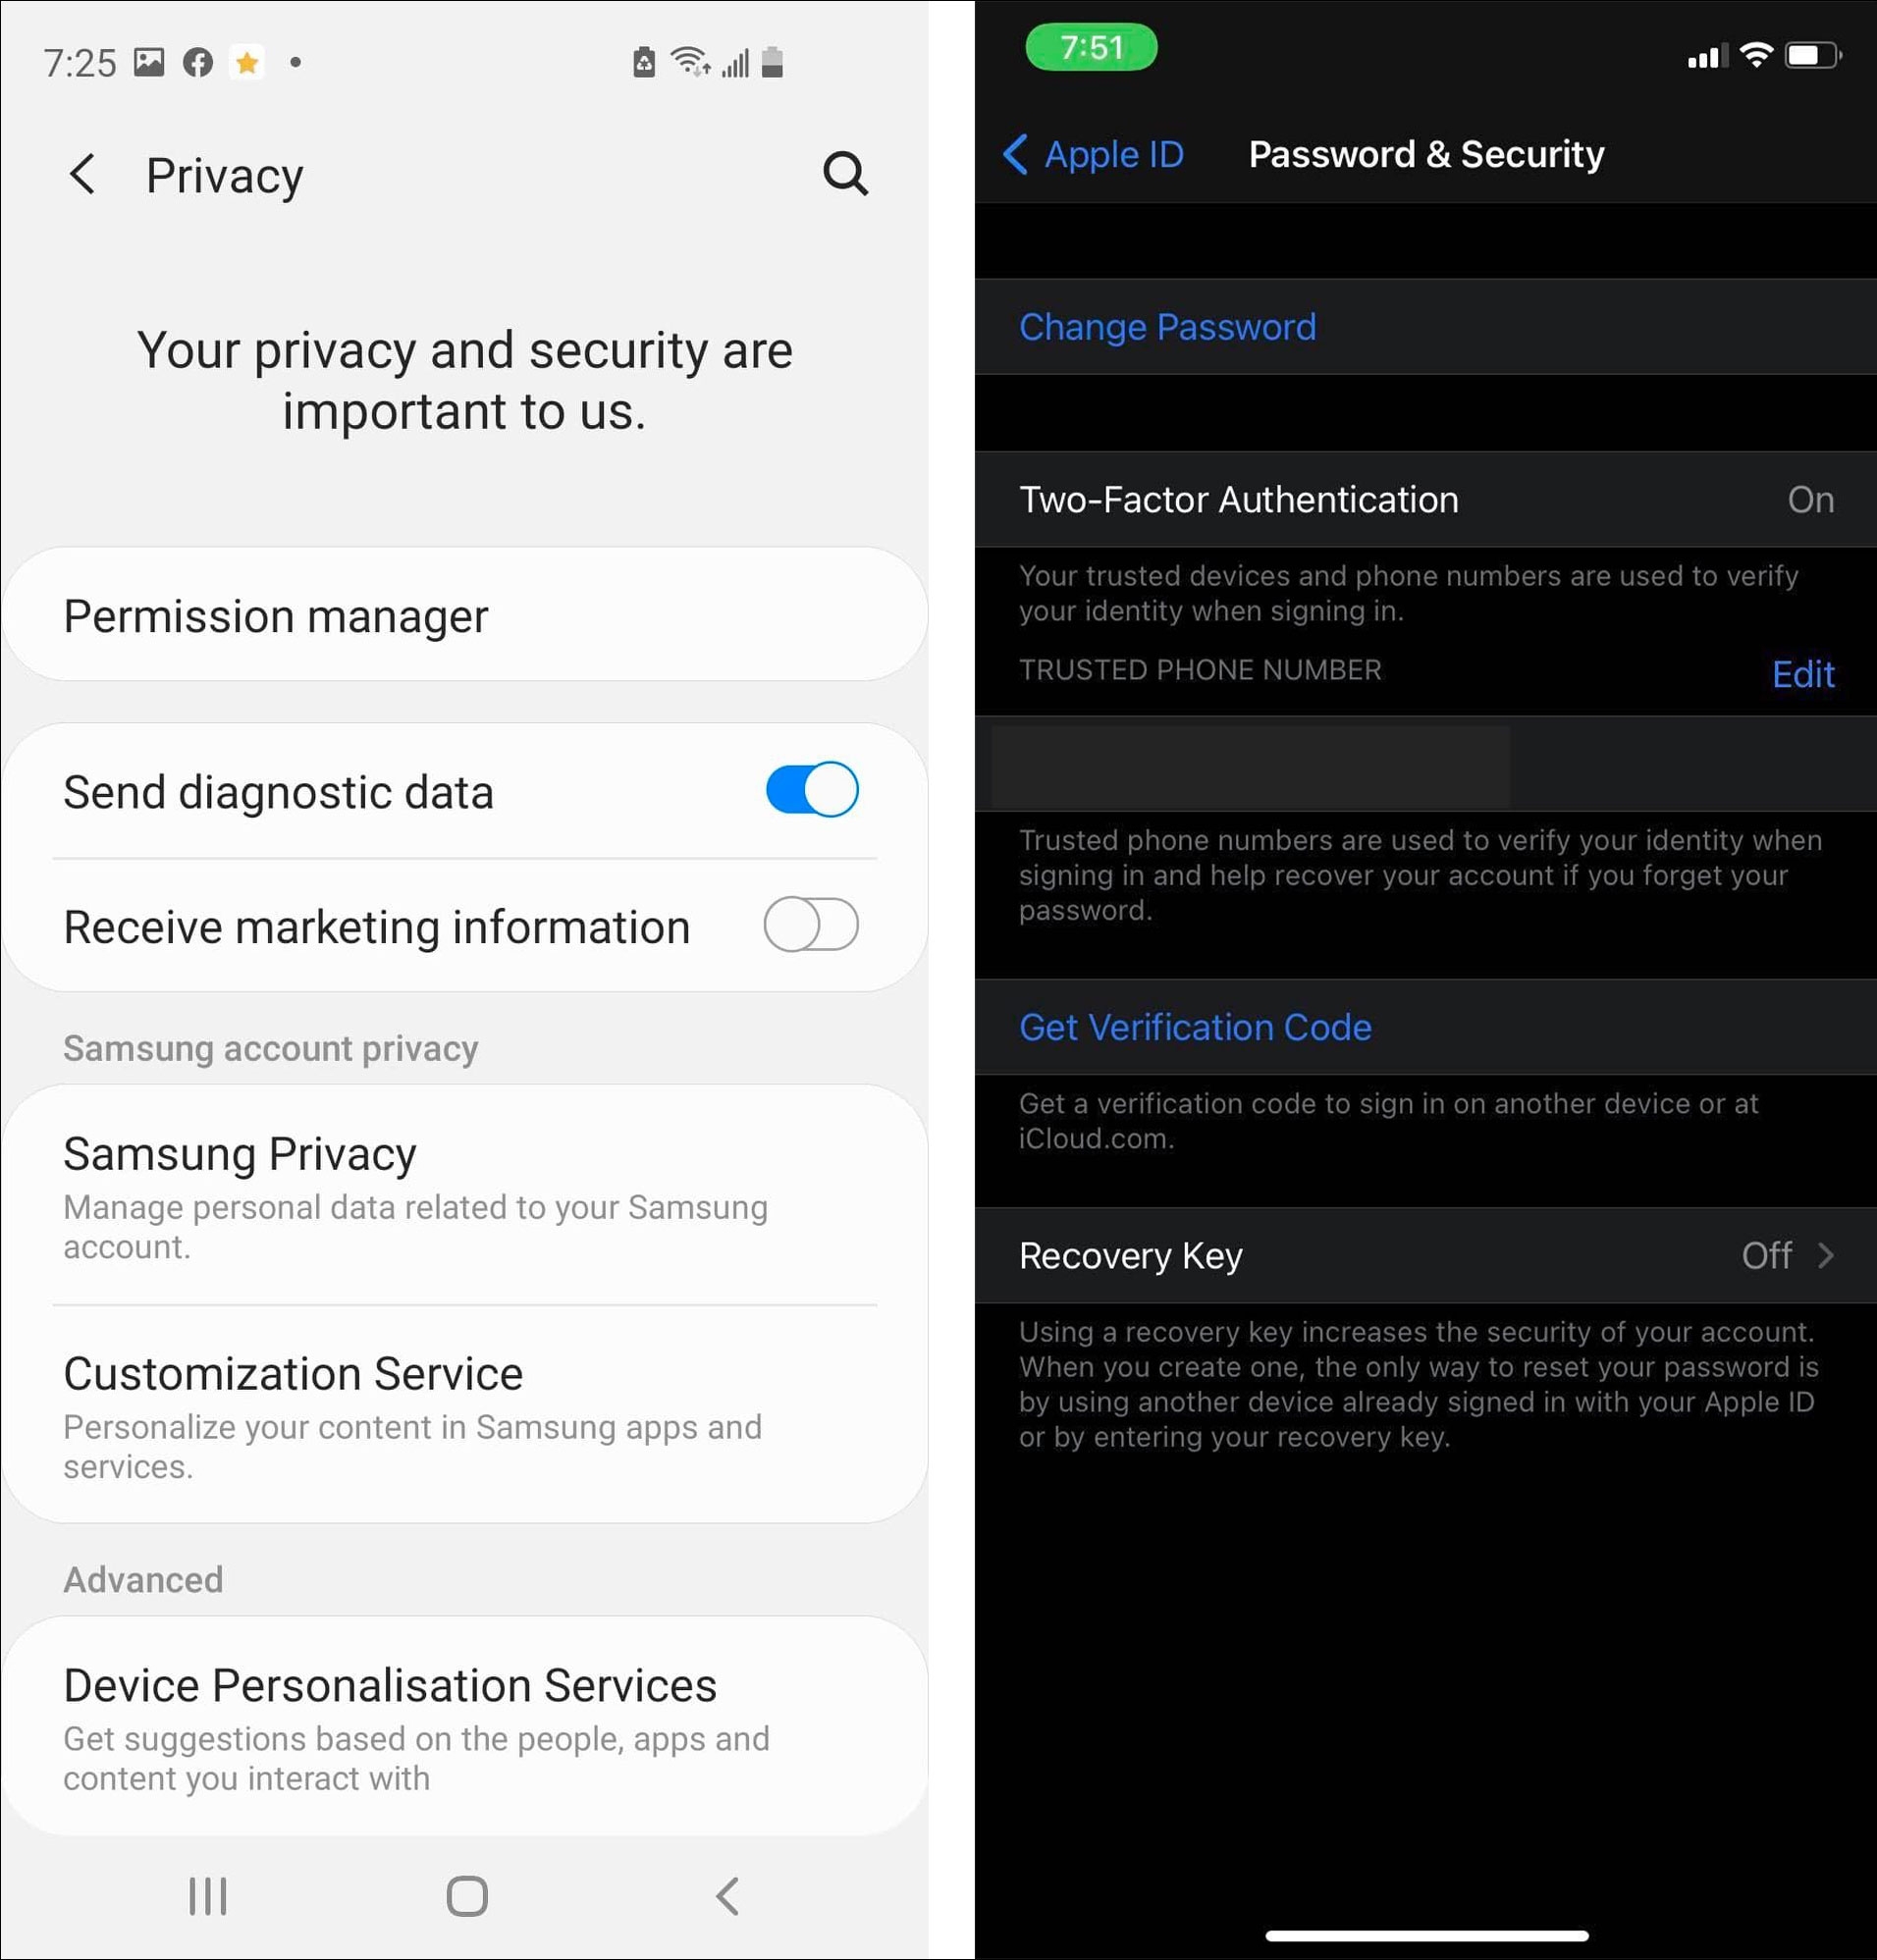 ميزات الأمان في أي أو إس (iOS) مقابل ميزات الأمان في أندرويد (Android)